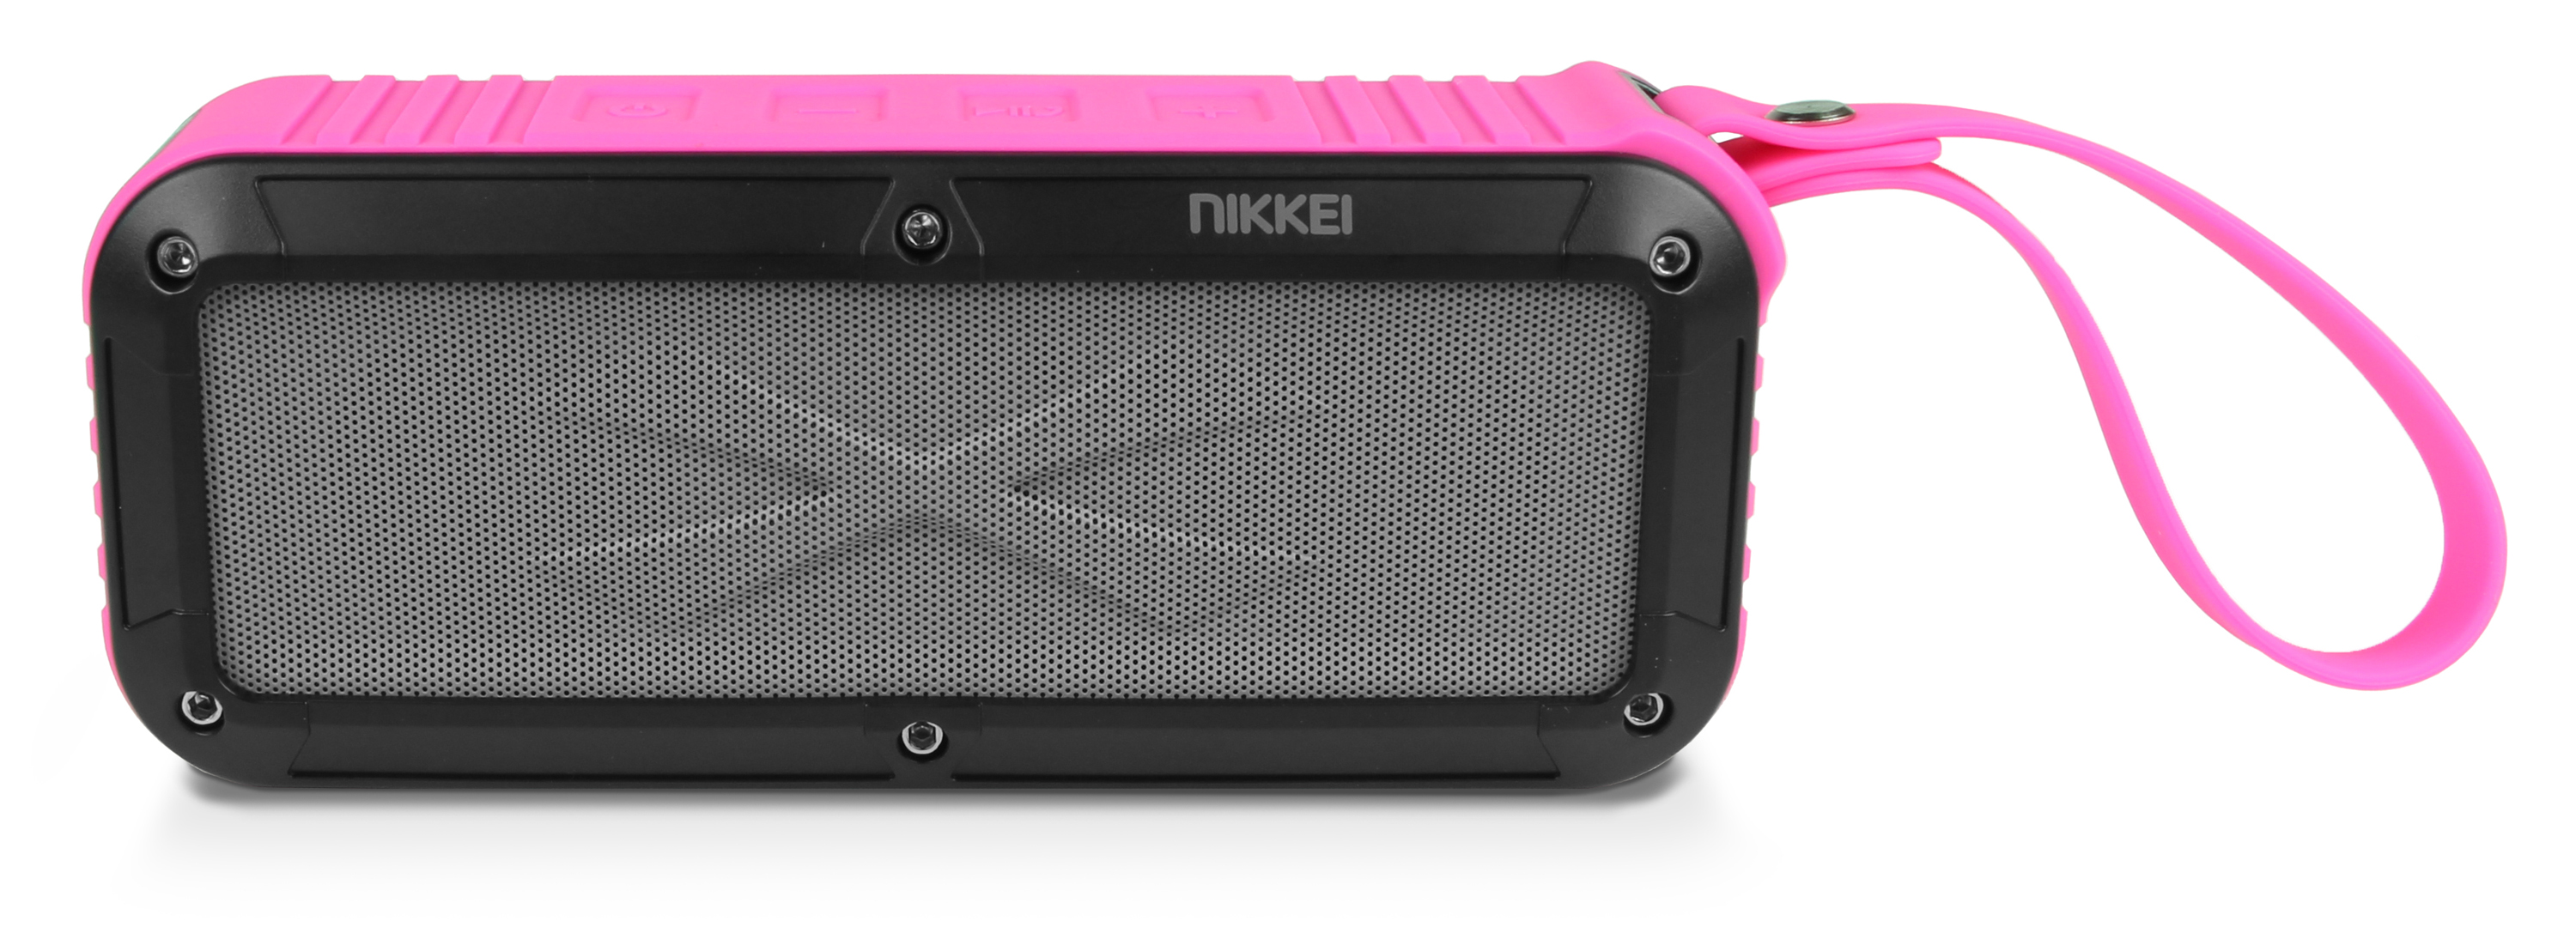 Nikkei  BOXX3PK Waterproof BT Speaker 2x3W roze